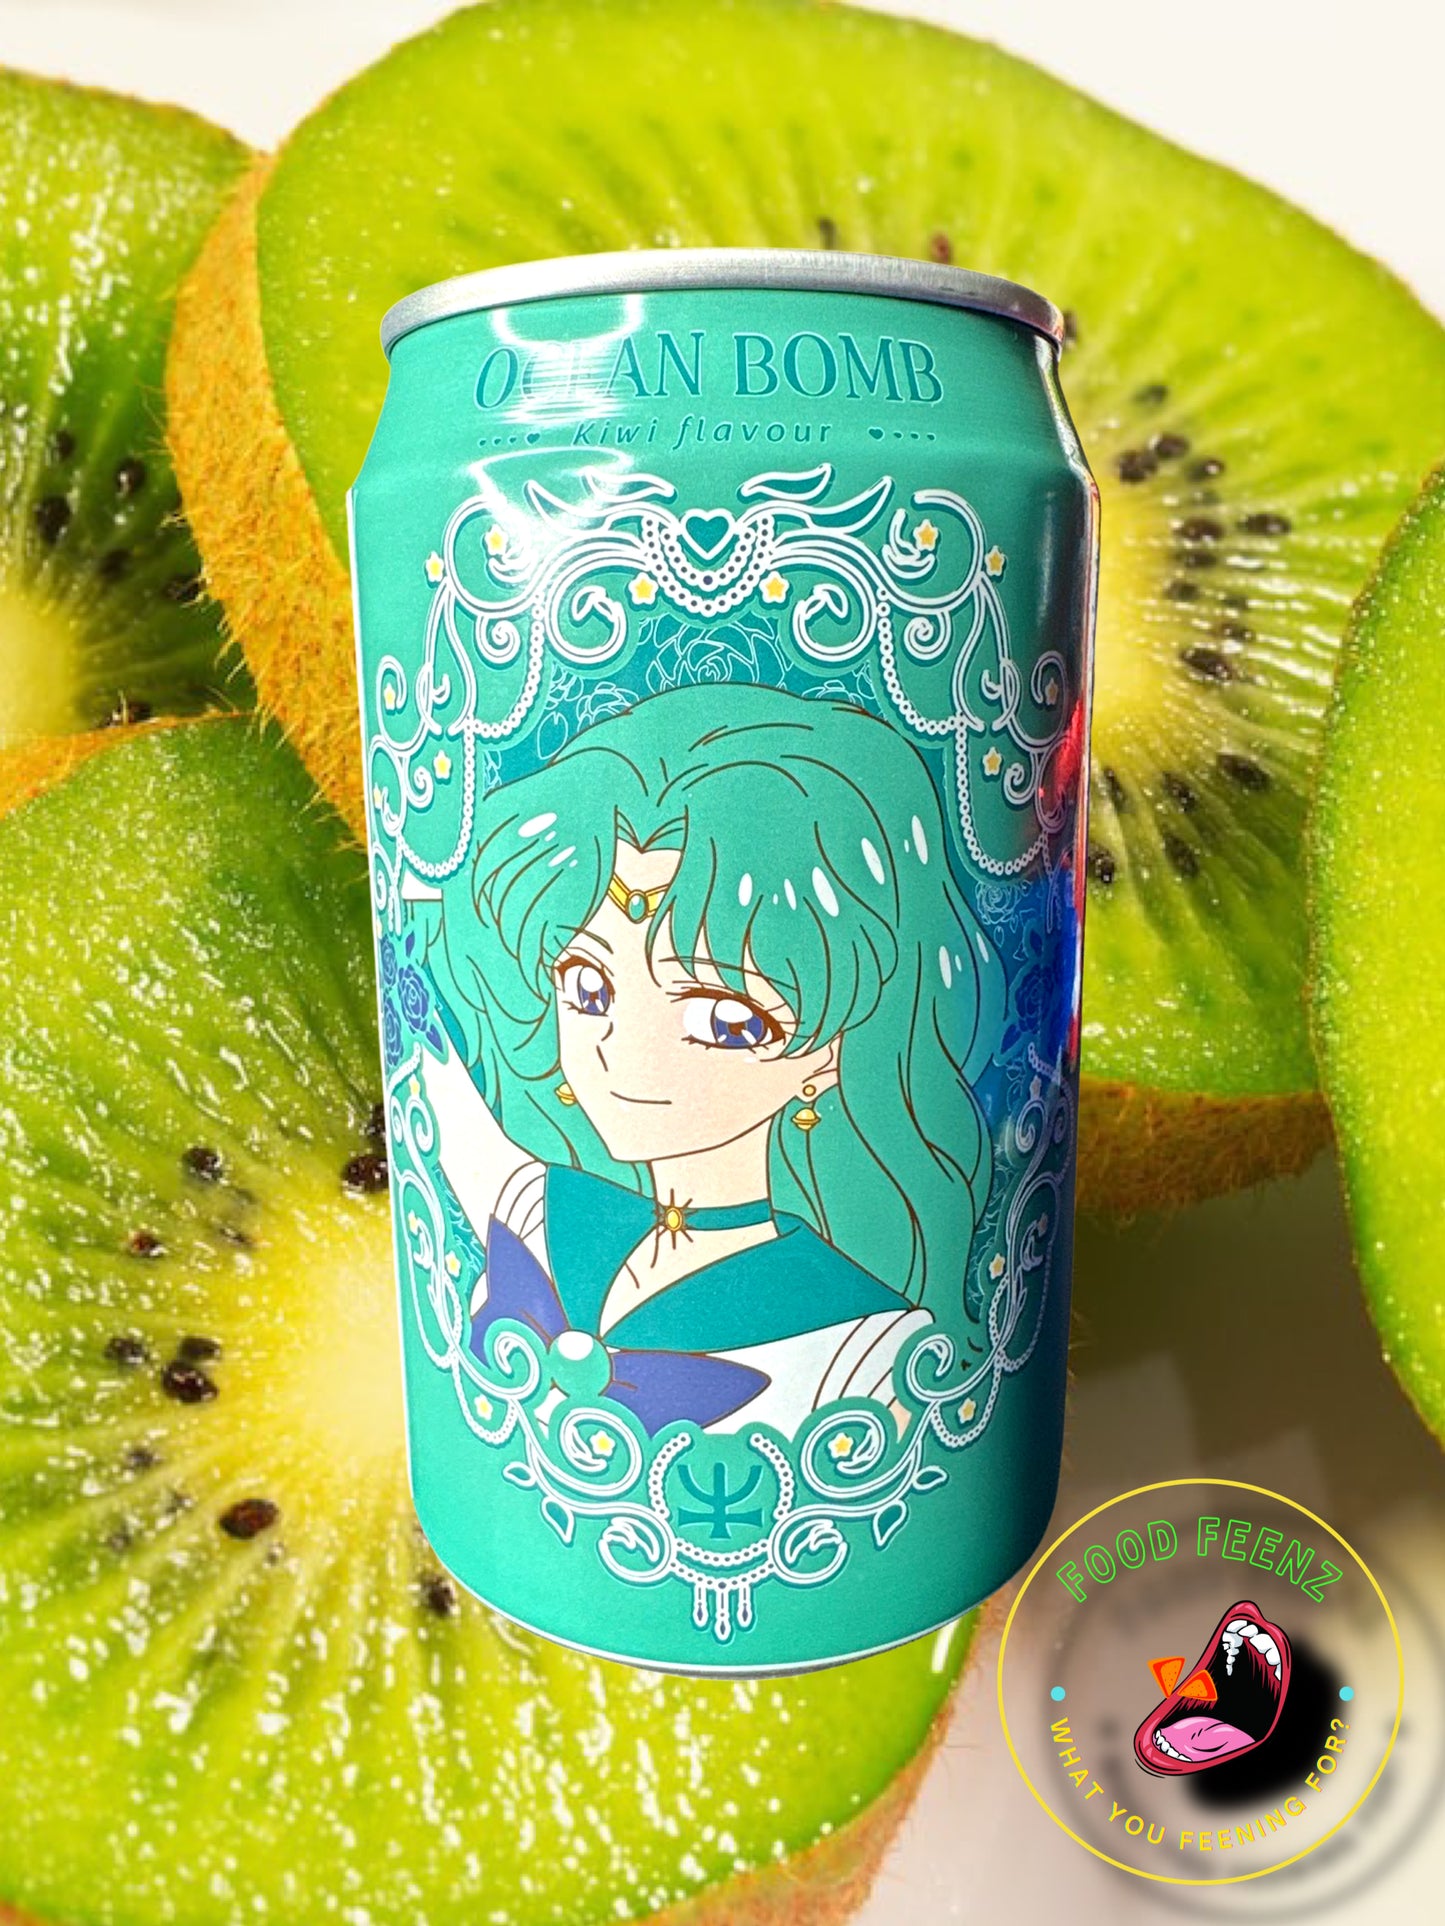 Sailor Moon Ocean Bomb Kiwi Flavor (Taiwan)